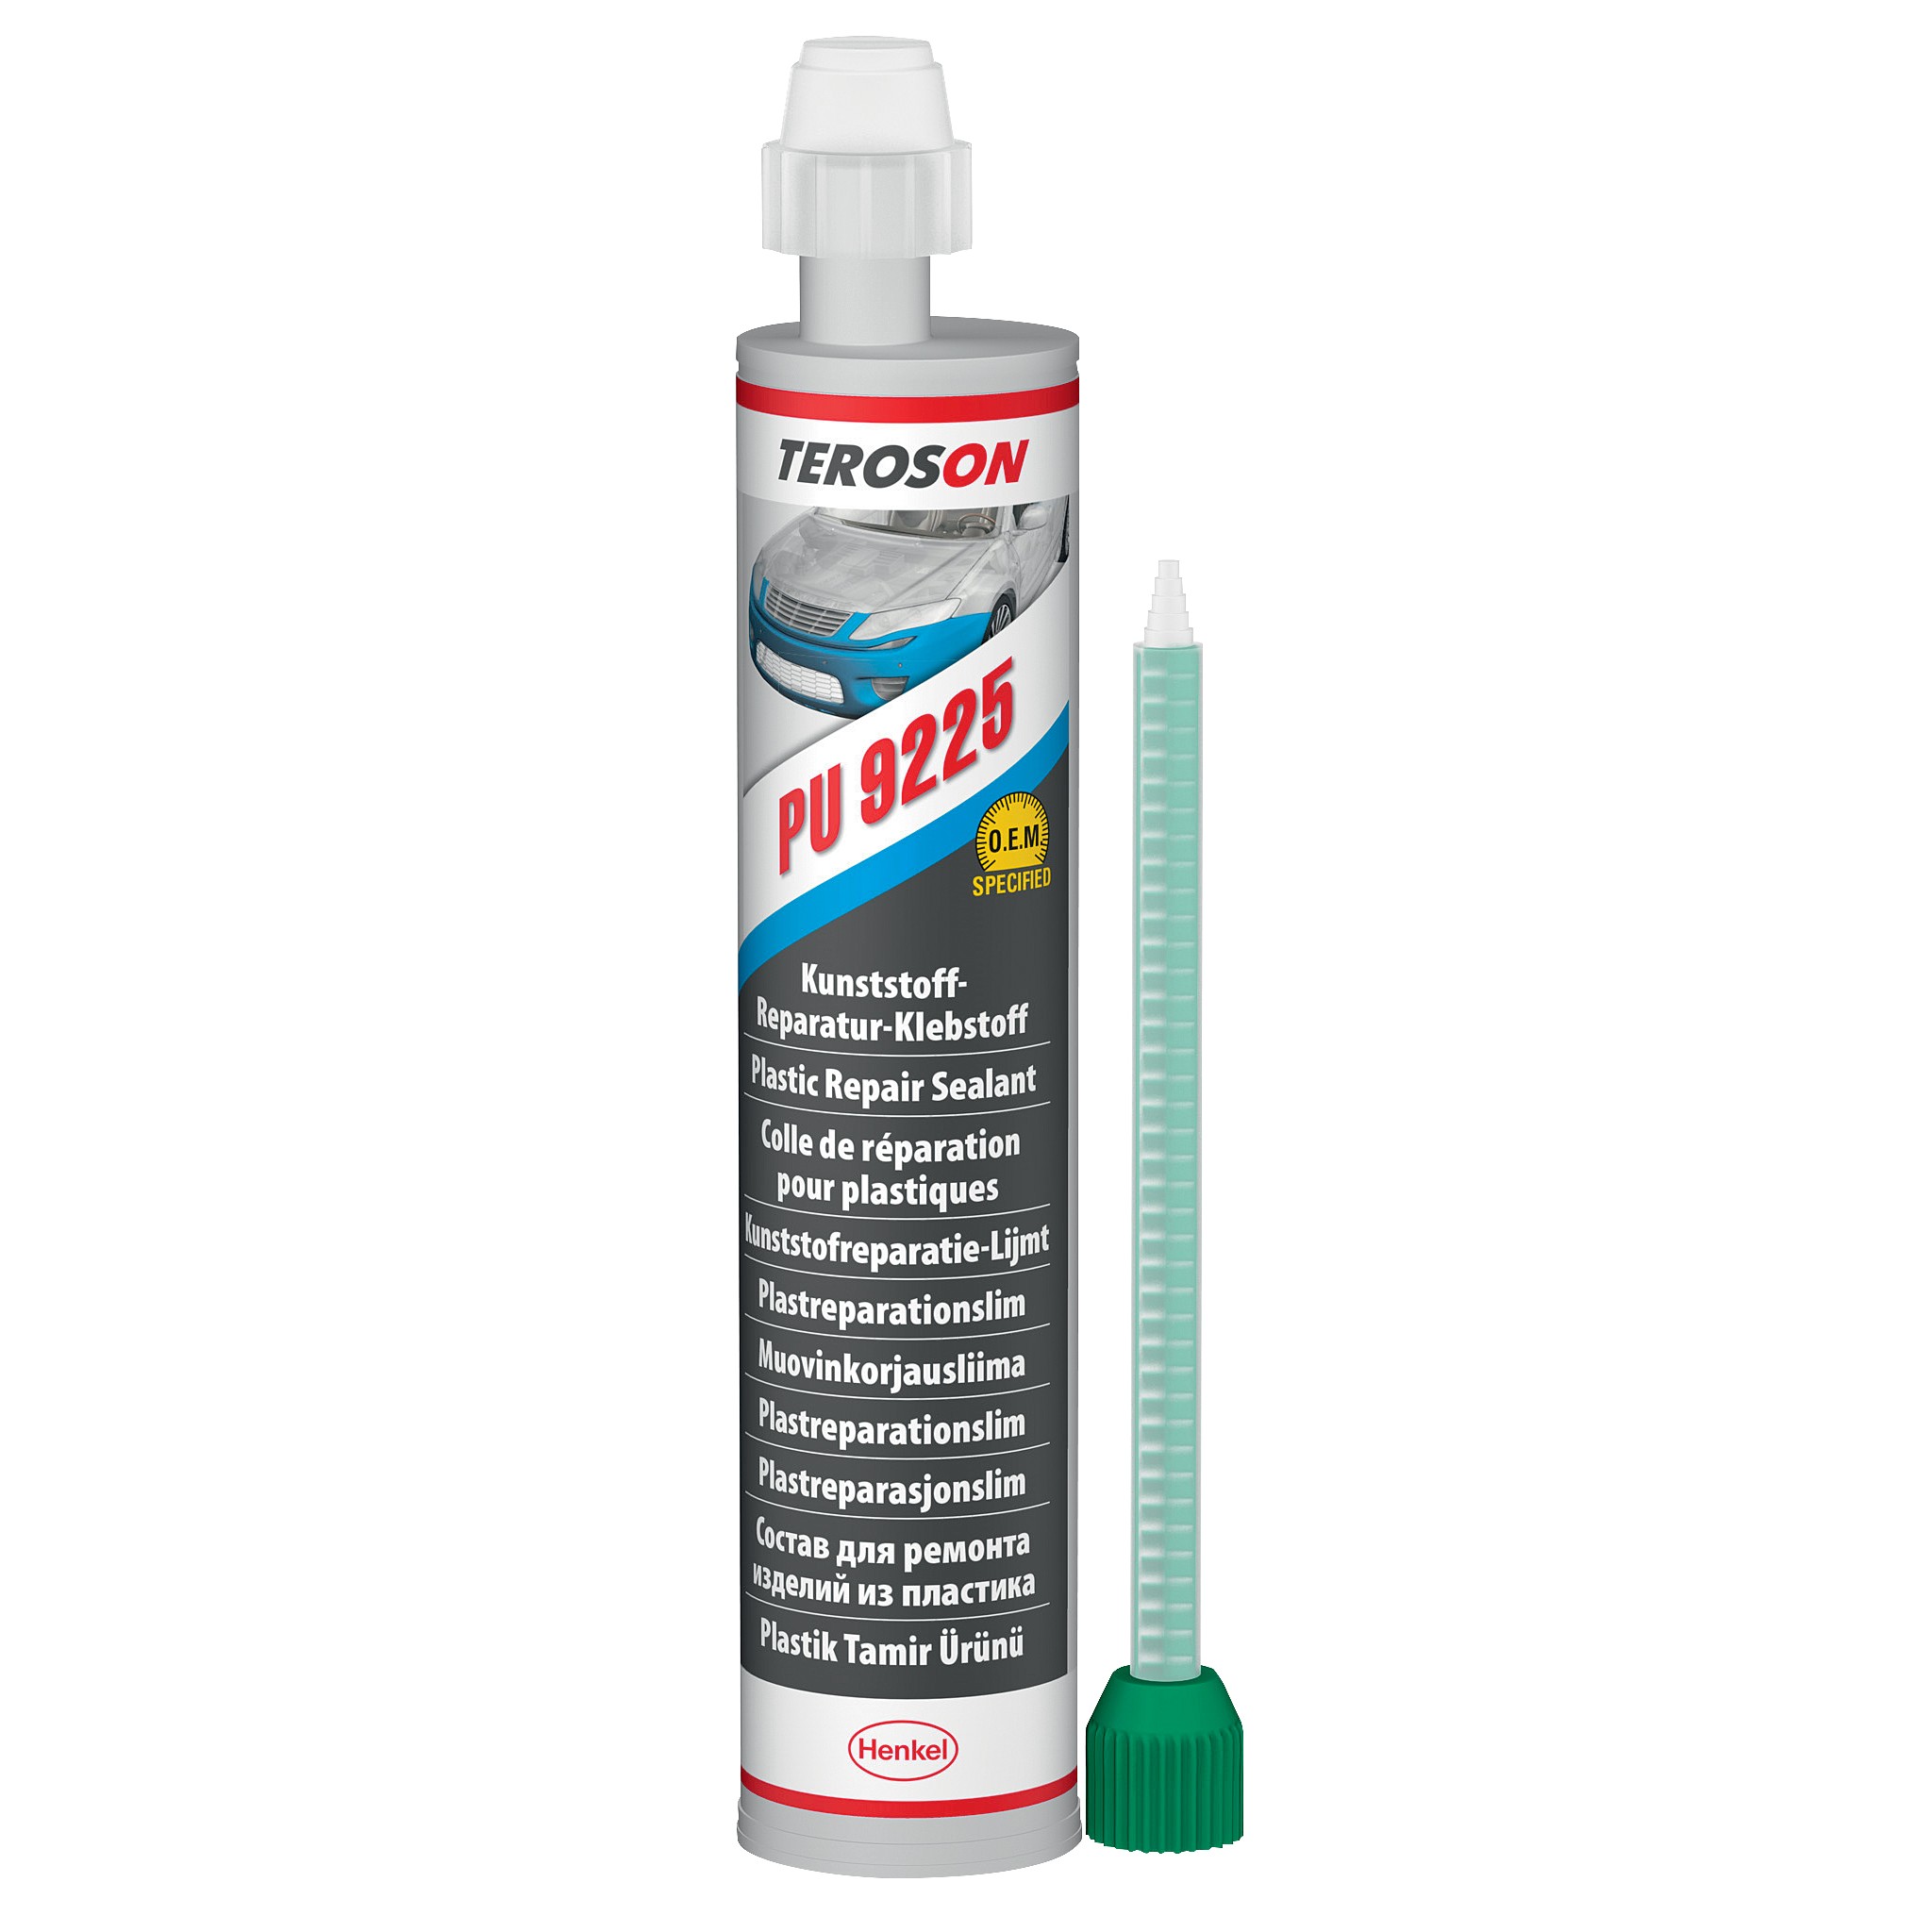 TEROSON 150 – plastic repair primer - Henkel Adhesives